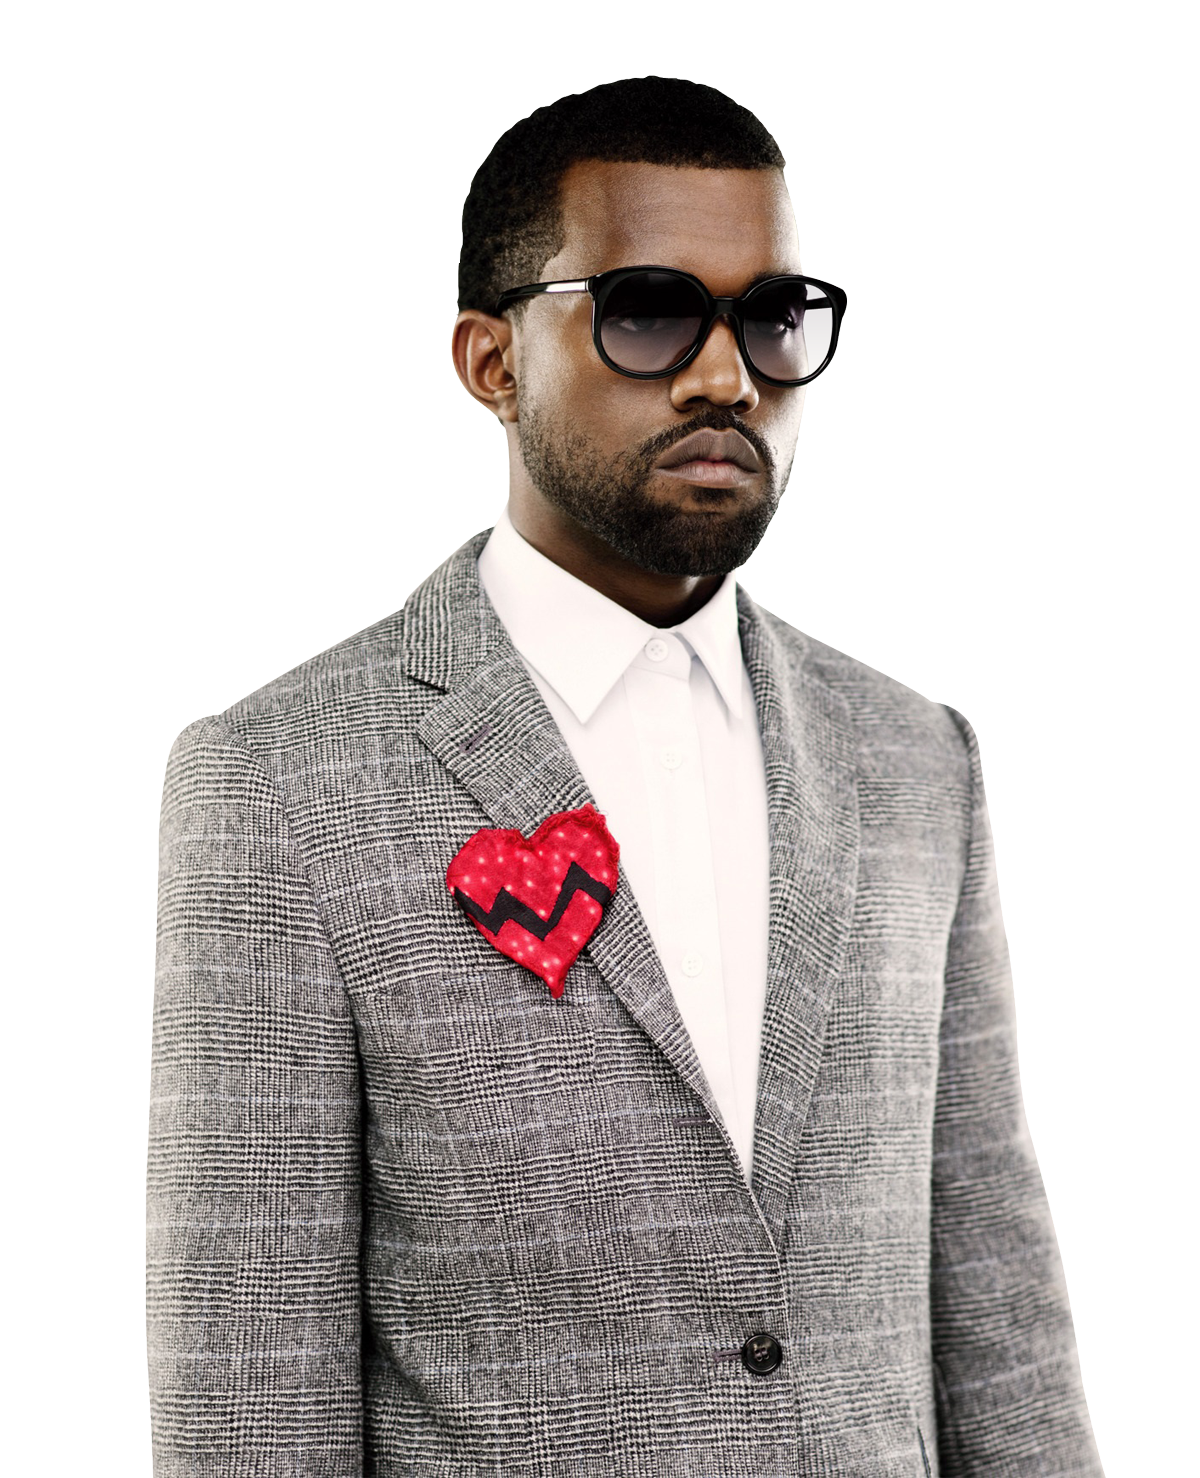 Ye Kanye West Rapper PNG HQ